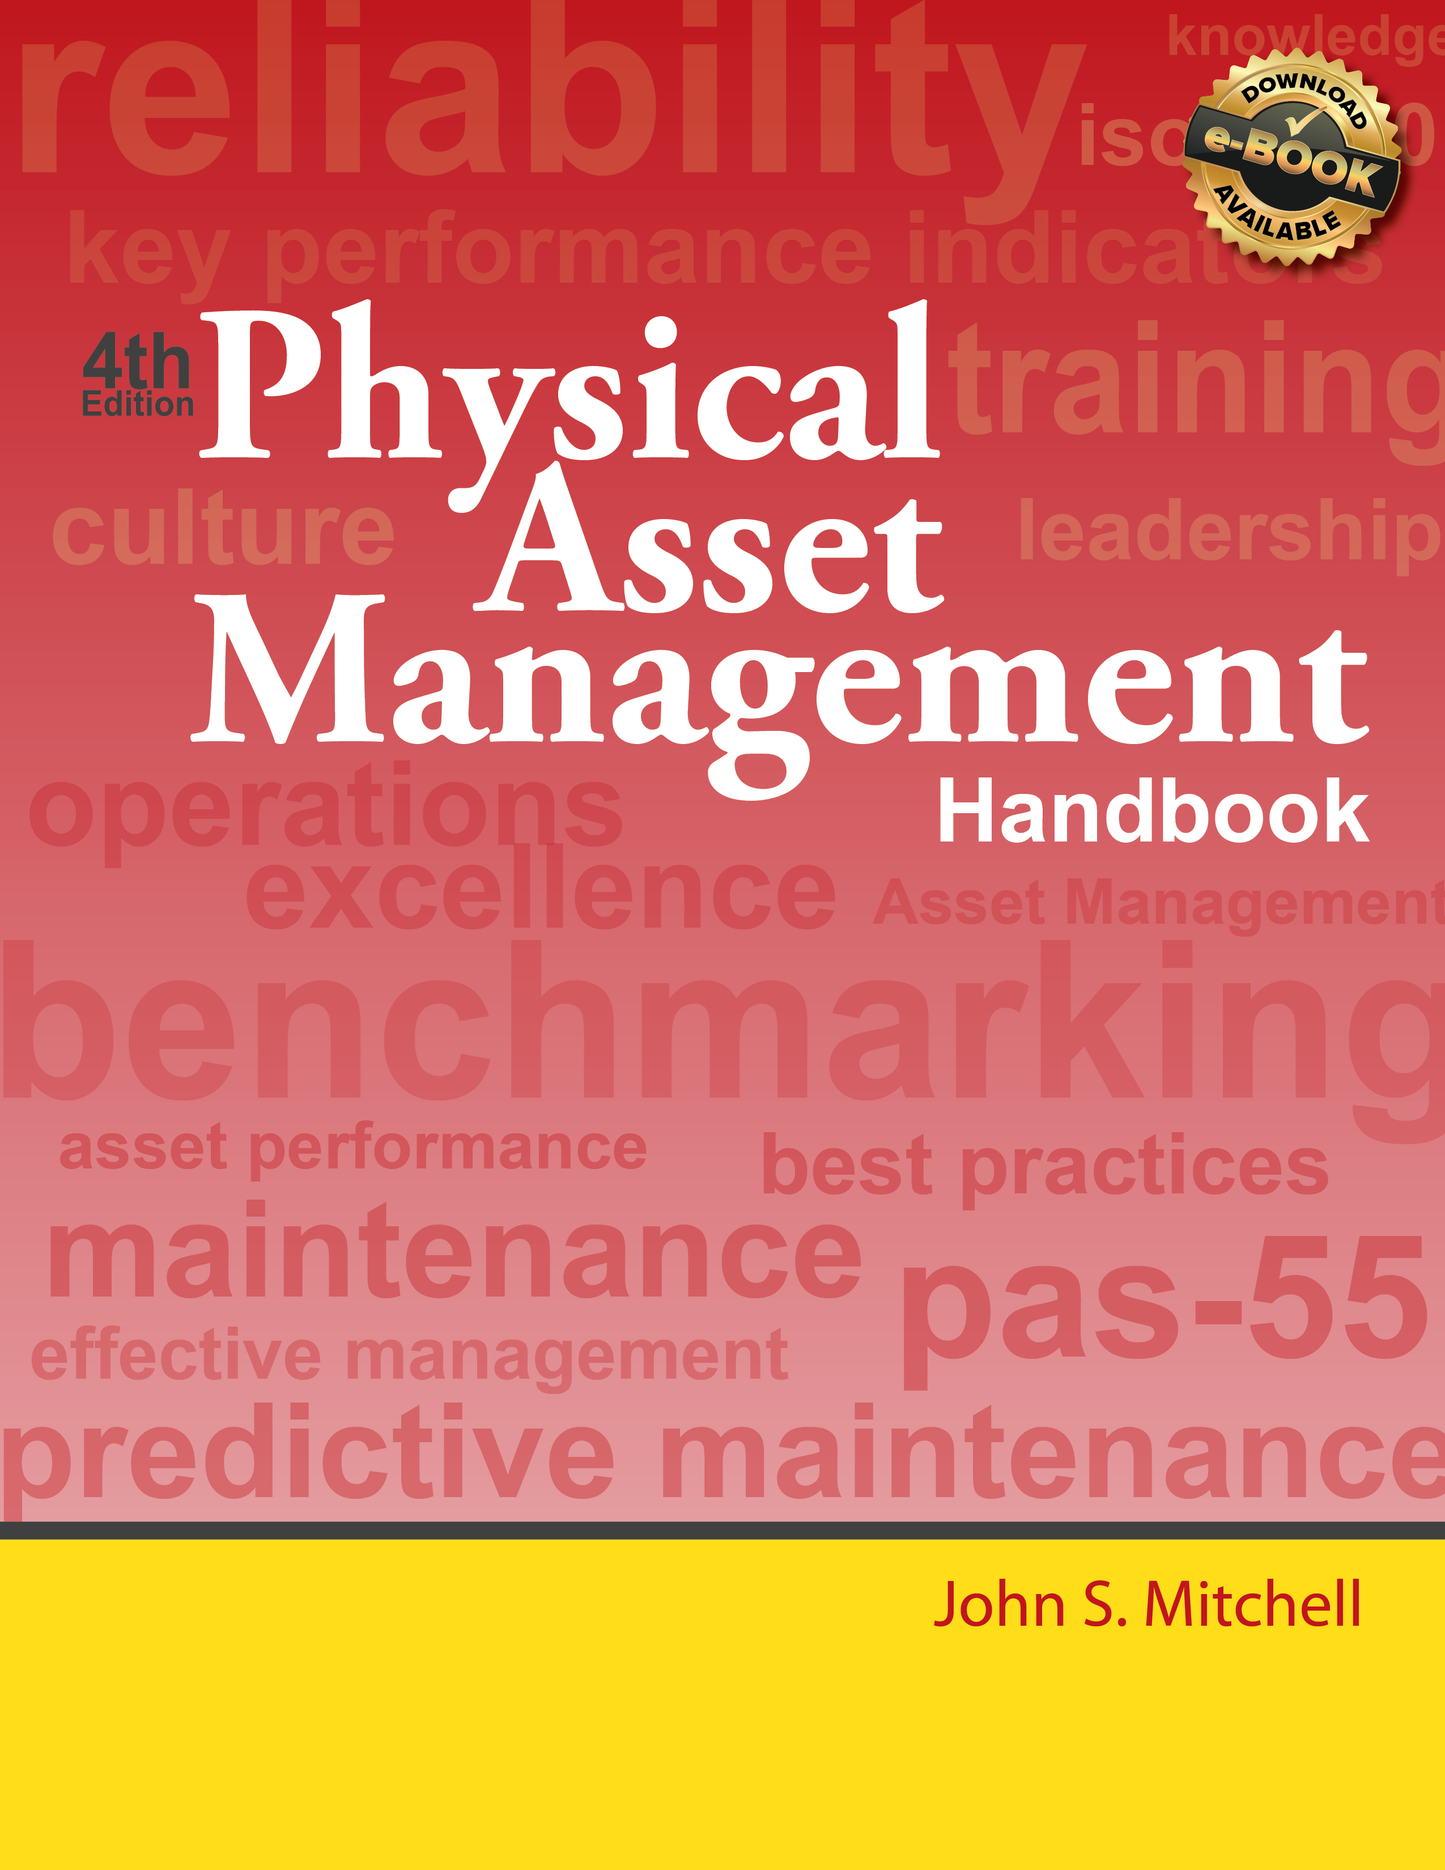 Physical Asset Management Handbook - Paperback